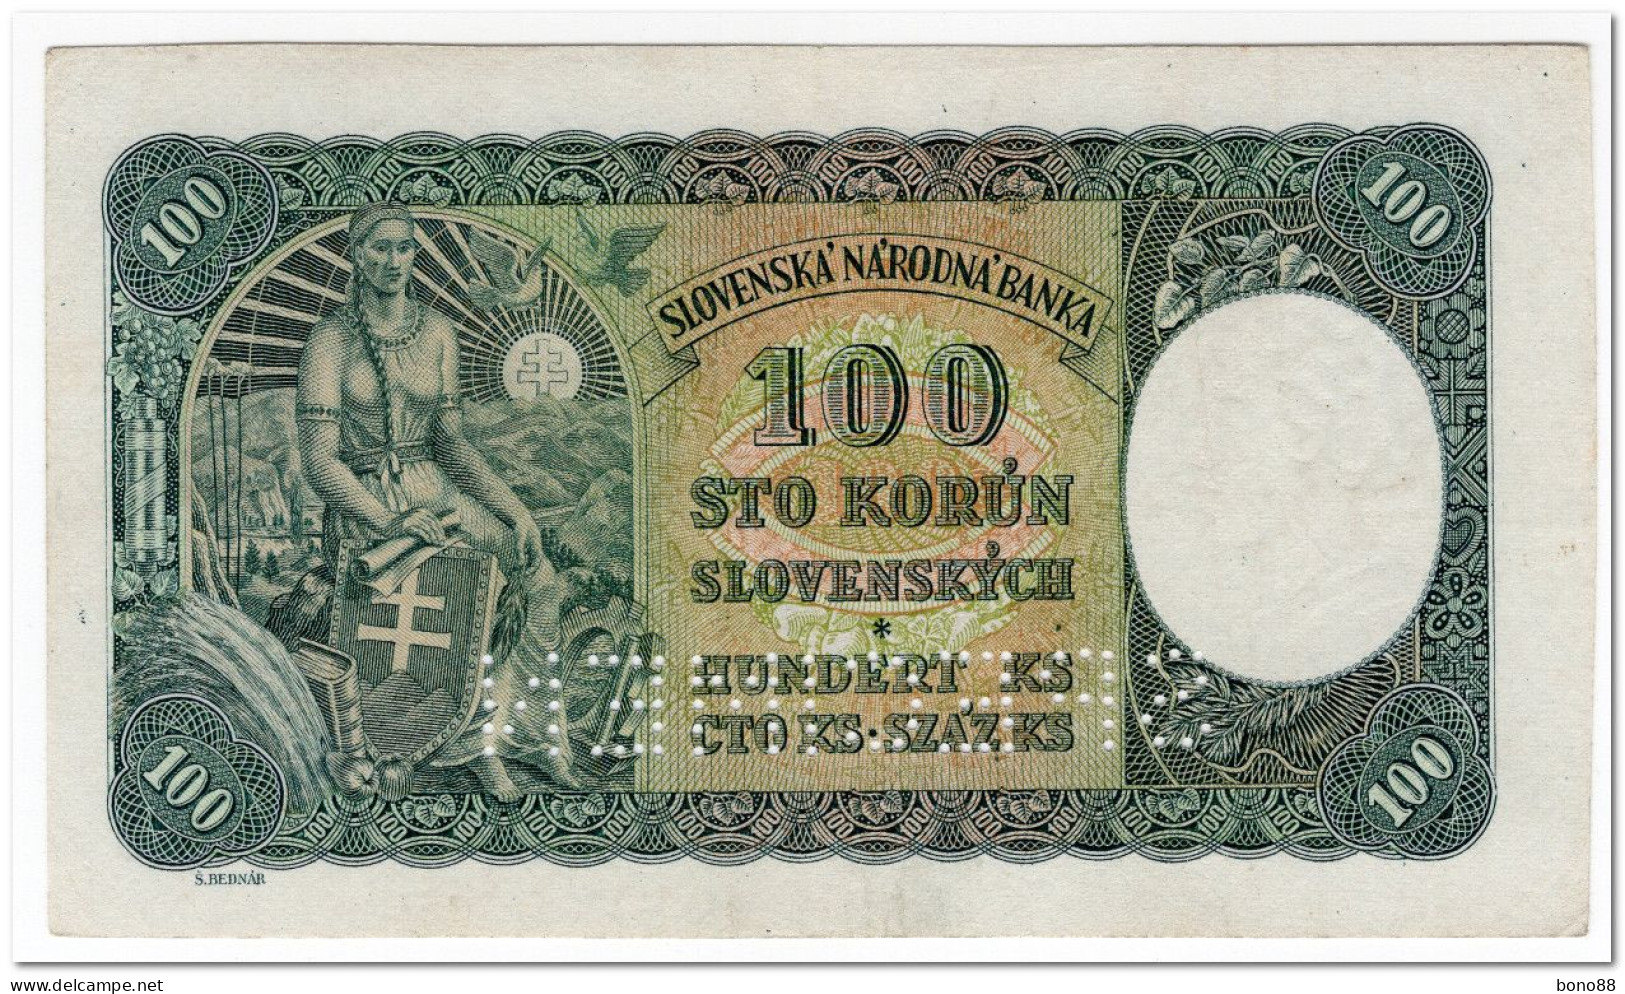 SLOVAKIA,100 KORUN,1940,P.10,AU,SPECIMEN,PERFORATED - Slovakia